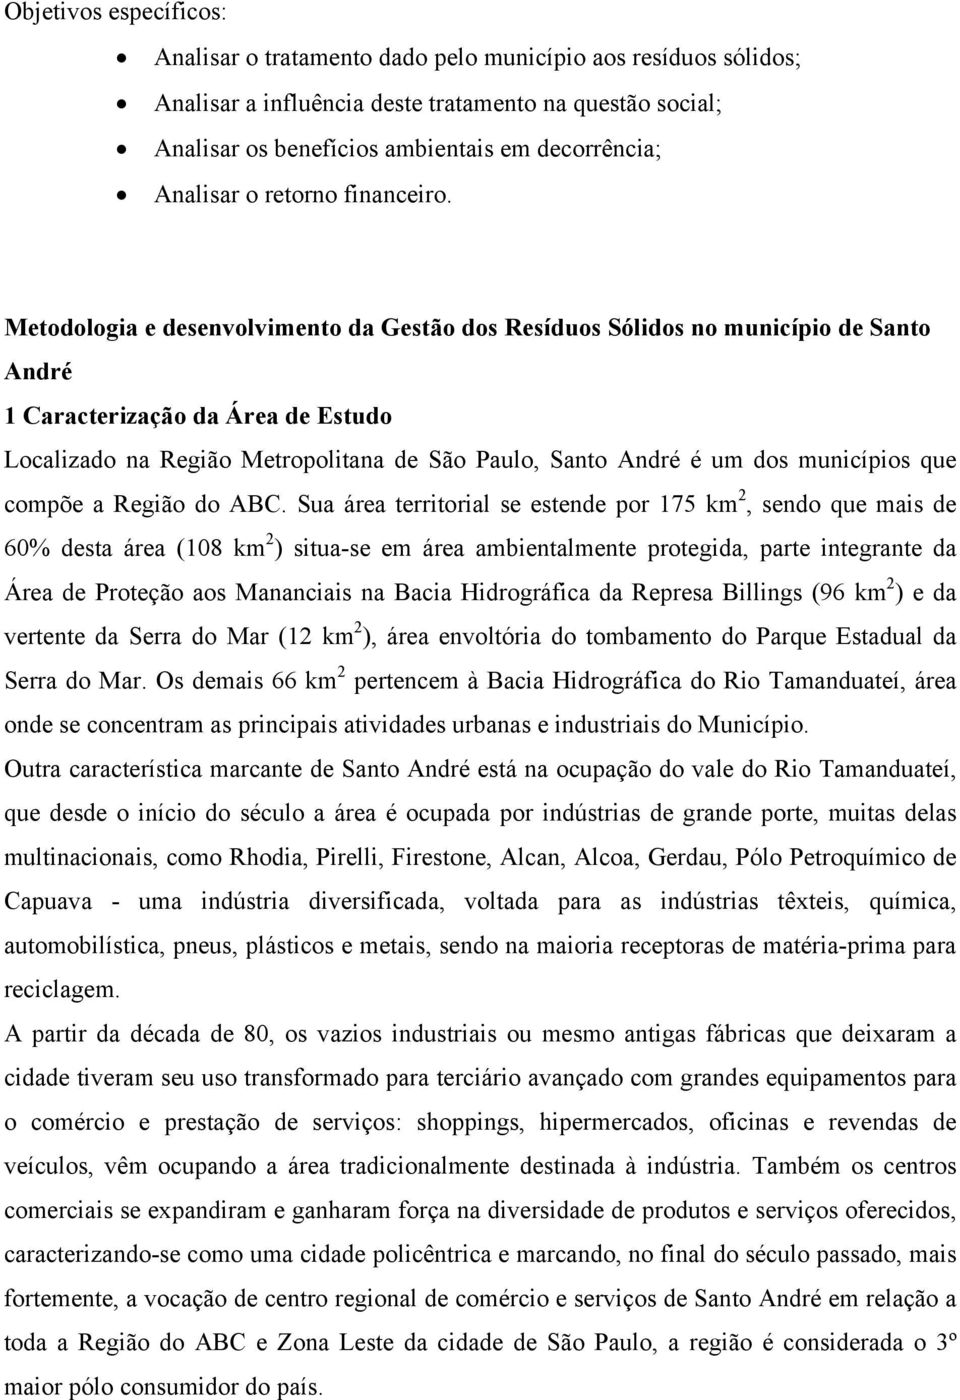 Metodologia e desenvolvimento da Gestão dos Resíduos Sólidos no município de Santo André 1 Caracterização da Área de Estudo Localizado na Região Metropolitana de São Paulo, Santo André é um dos